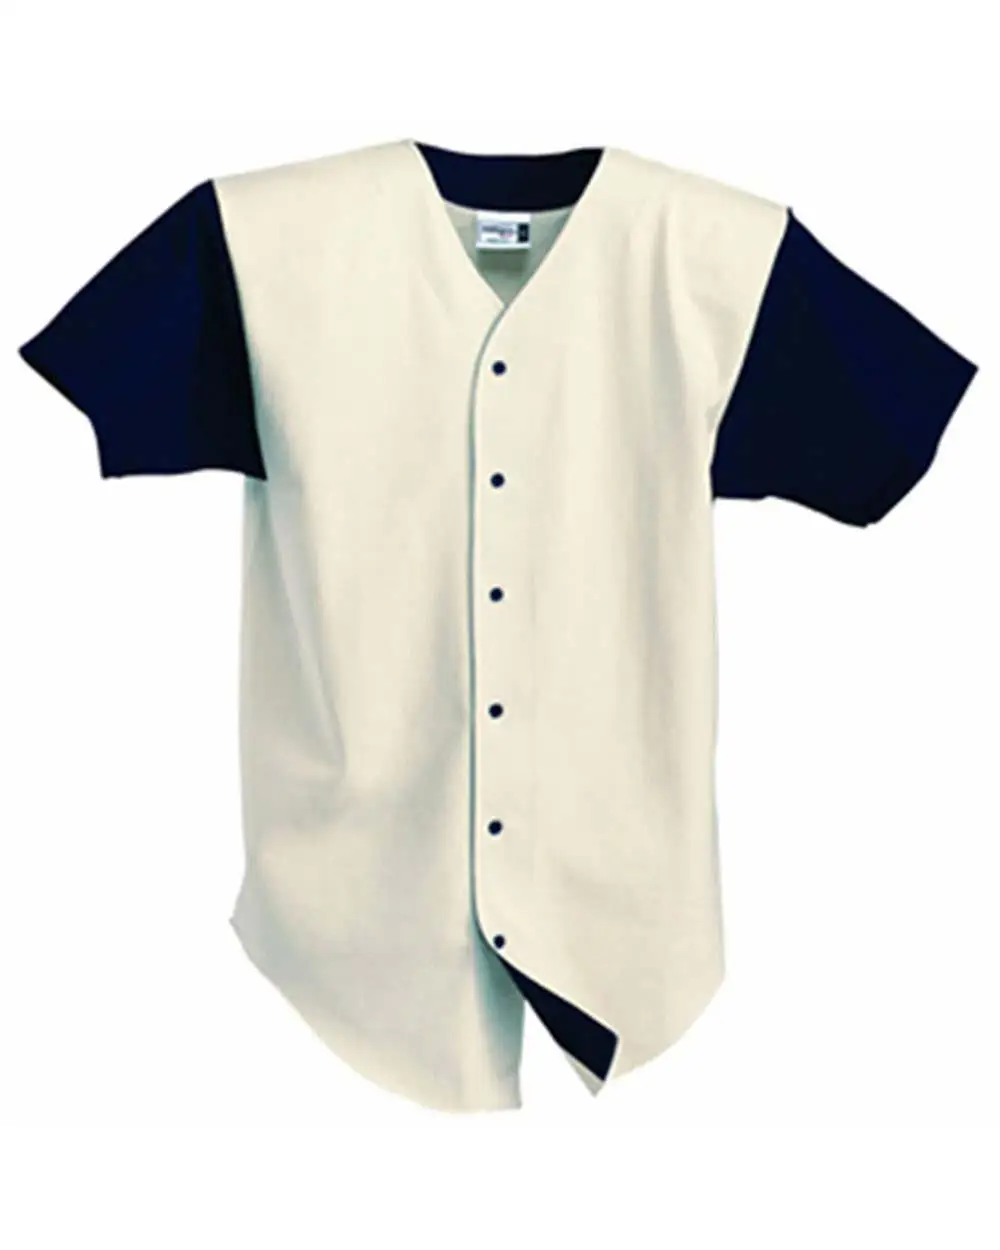 custom toddler baseball jersey